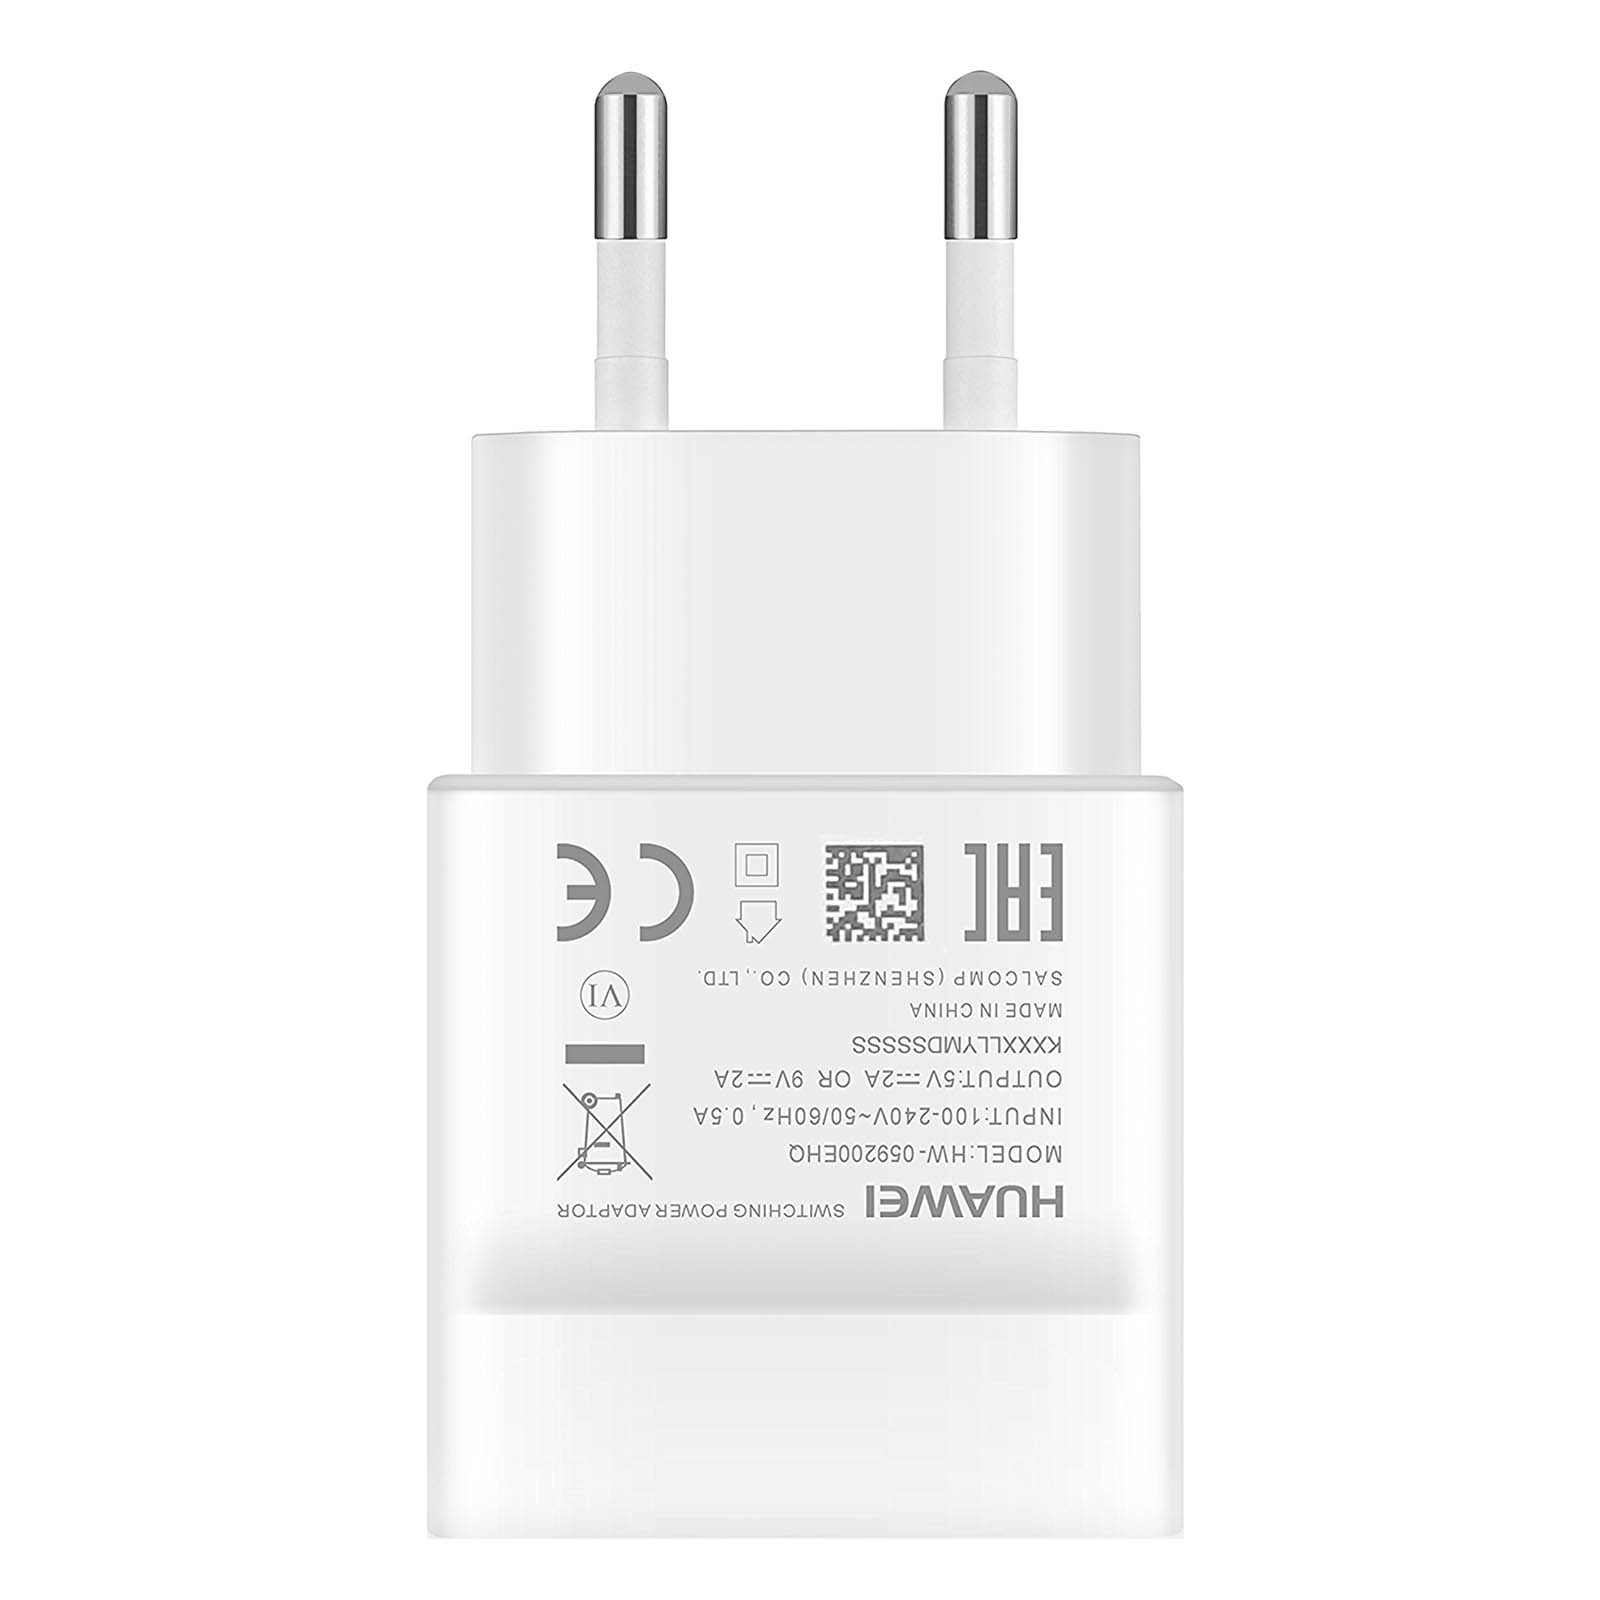 HUAWEI Netzteil, 2A USB-C Weiß Universal, Wand-Ladegerät Netzteile